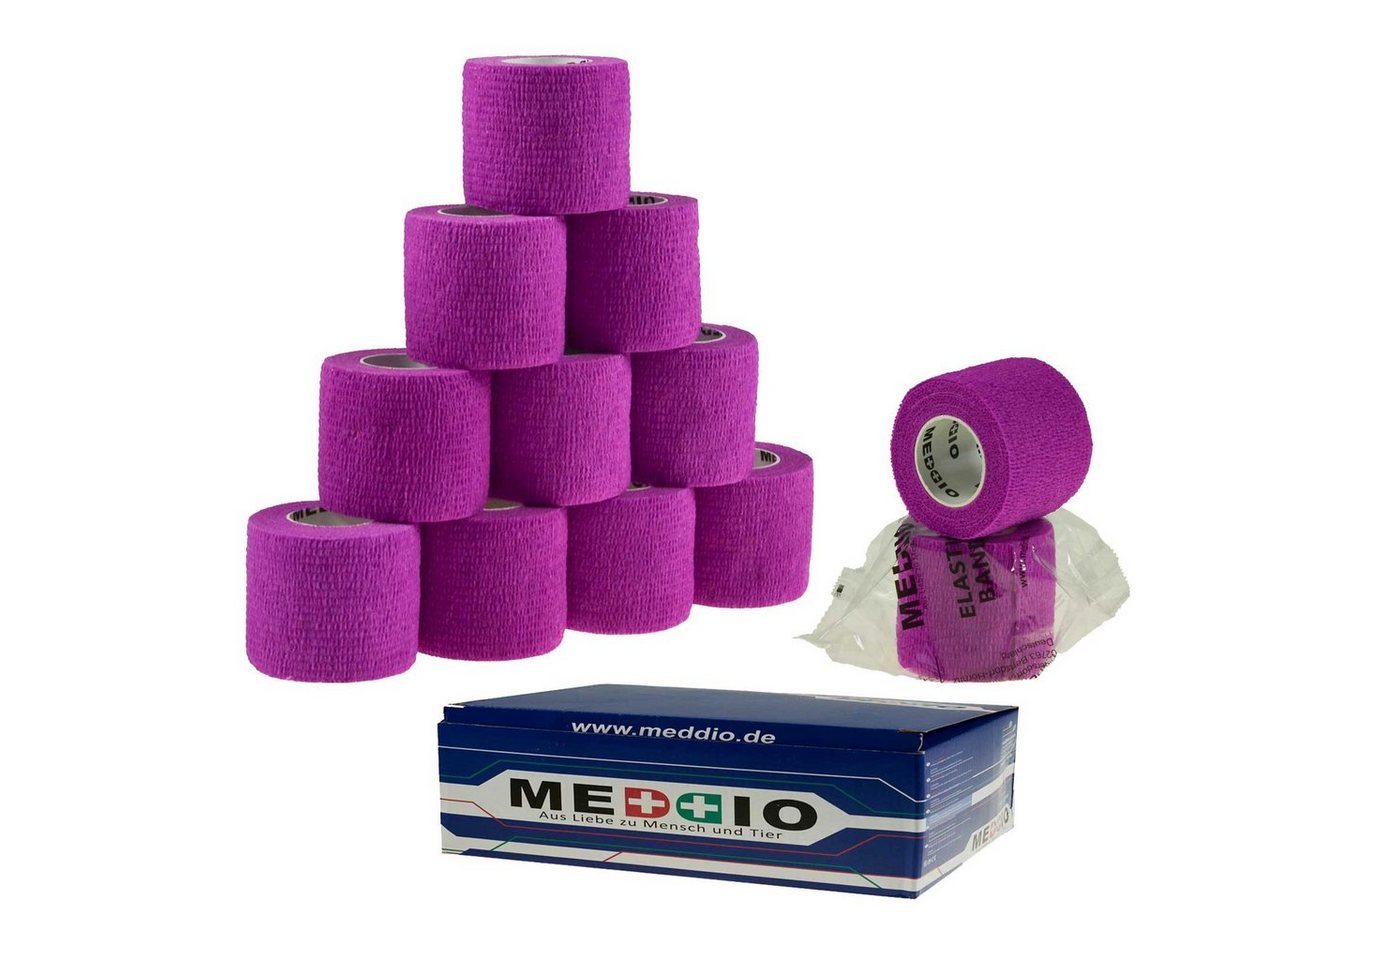 meDDio Pferdebandage 12 Haftbandagen Größe+Farbe wählbar, calm purple von meDDio